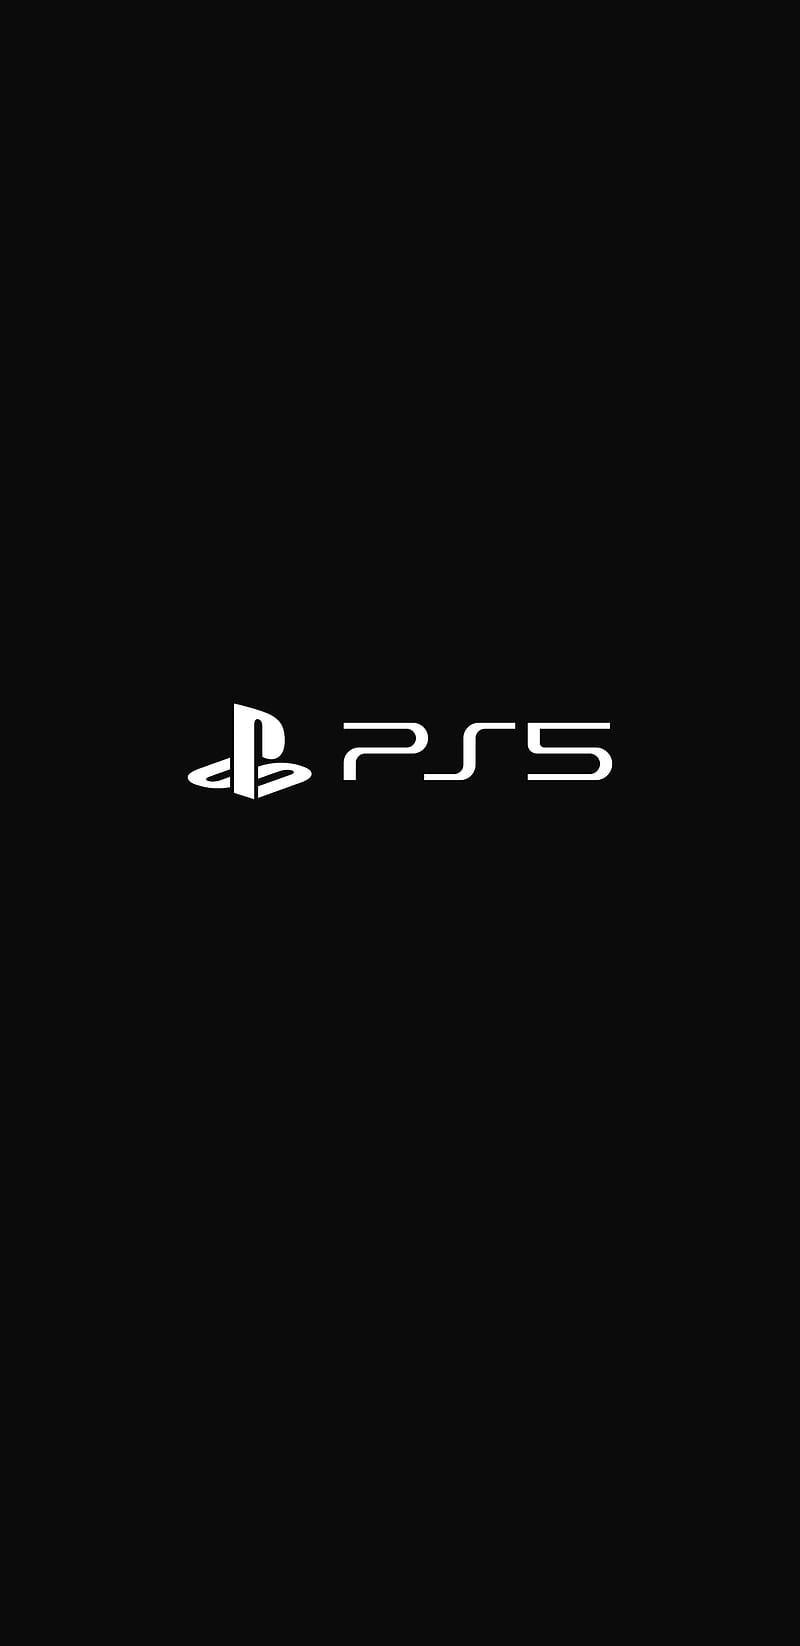 PS5 Amoled, 2020 amoled, black, logo, play, playstation, playstation 5, ps5, super amoled, HD phone wallpaper